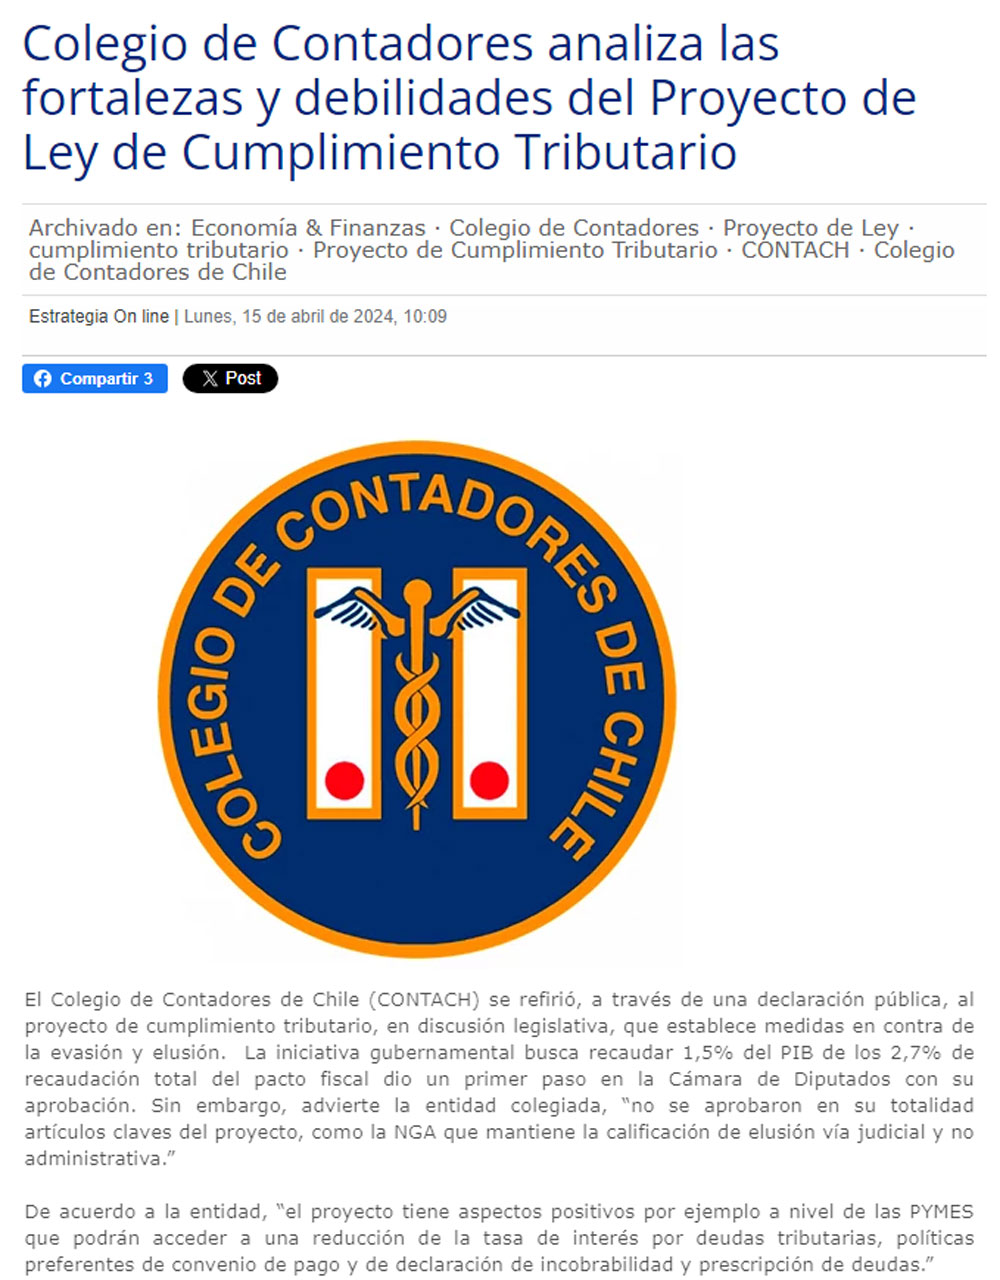 Colegio de Contadores analiza las fortalezas y debilidades del Proyecto de Ley de Cumplimiento Tributario